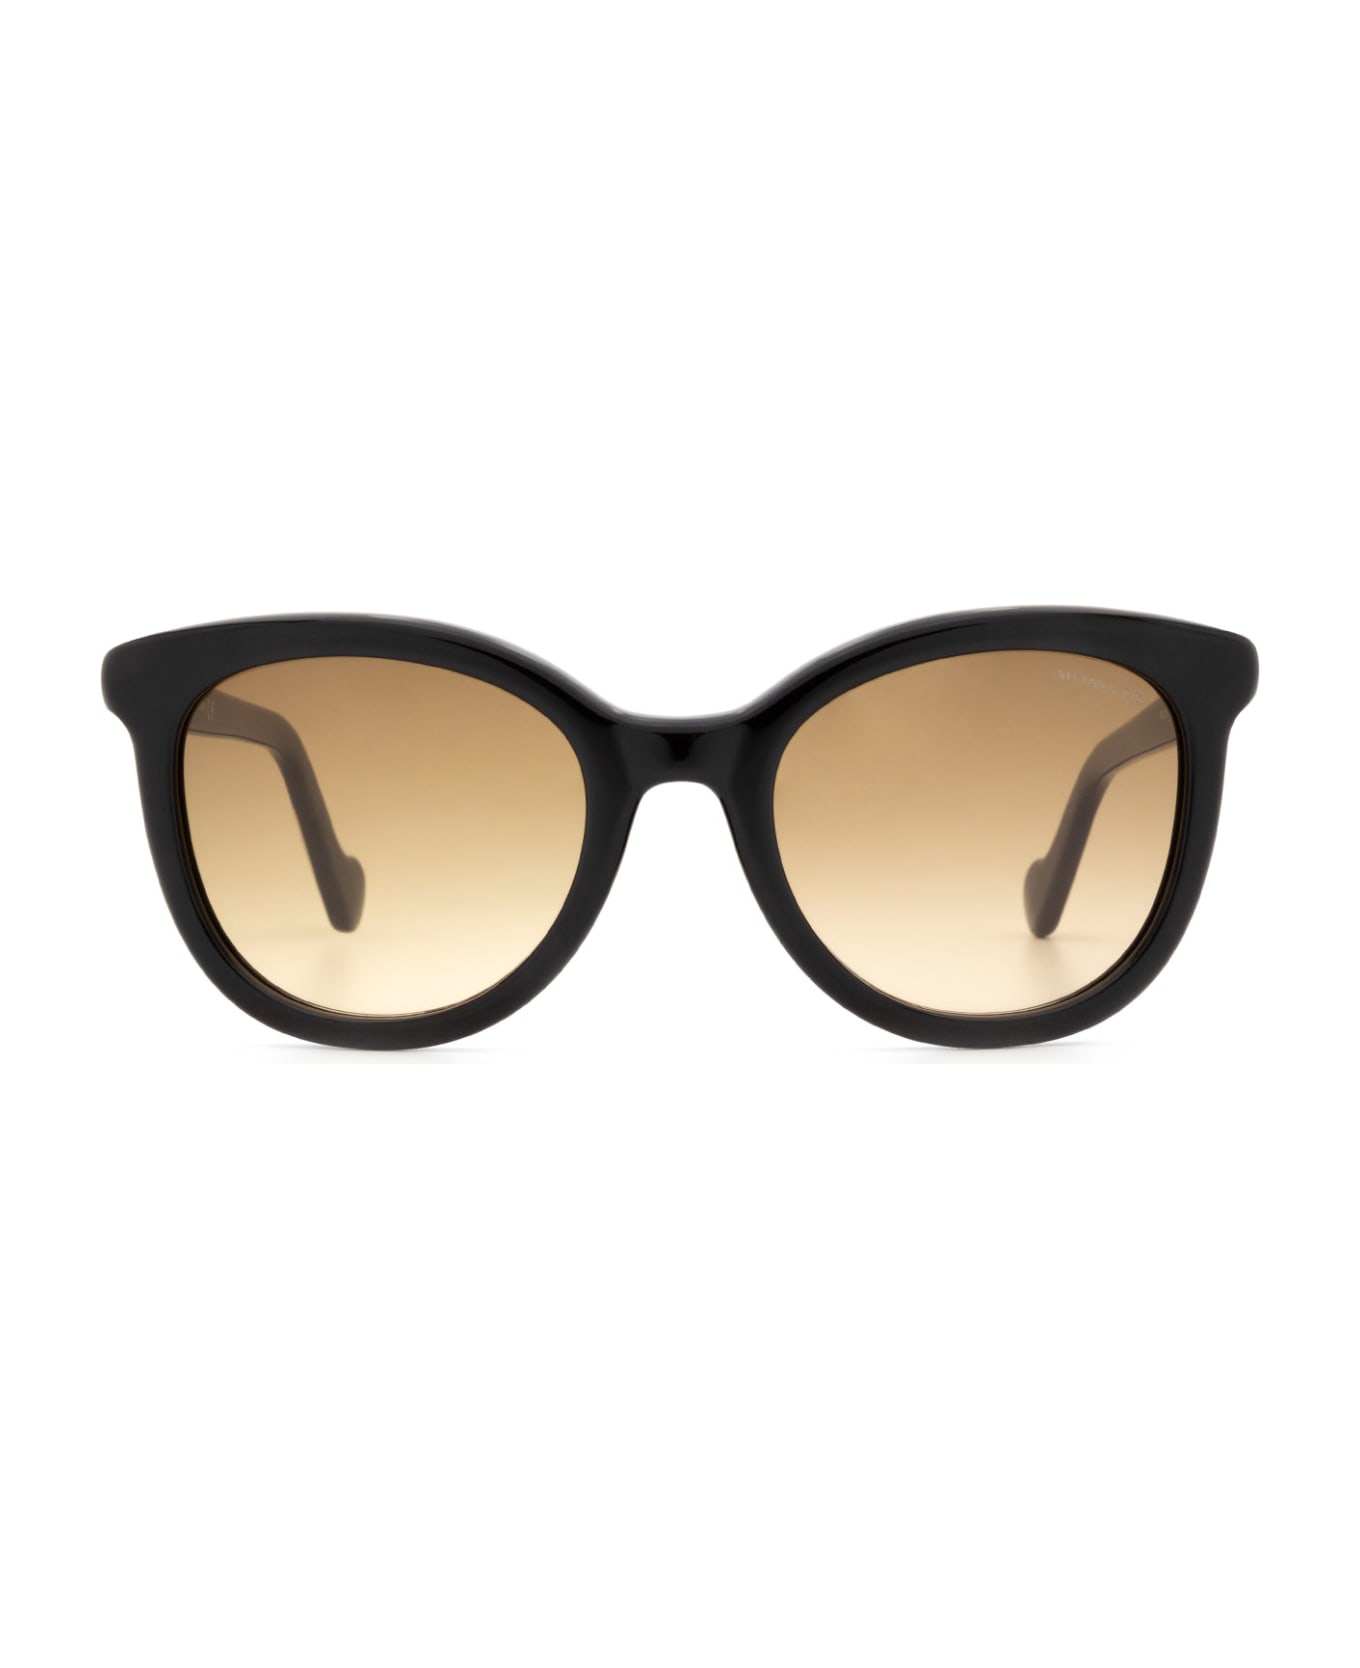 Moncler Eyewear Ml0119 Shiny Black Sunglasses - Shiny Black